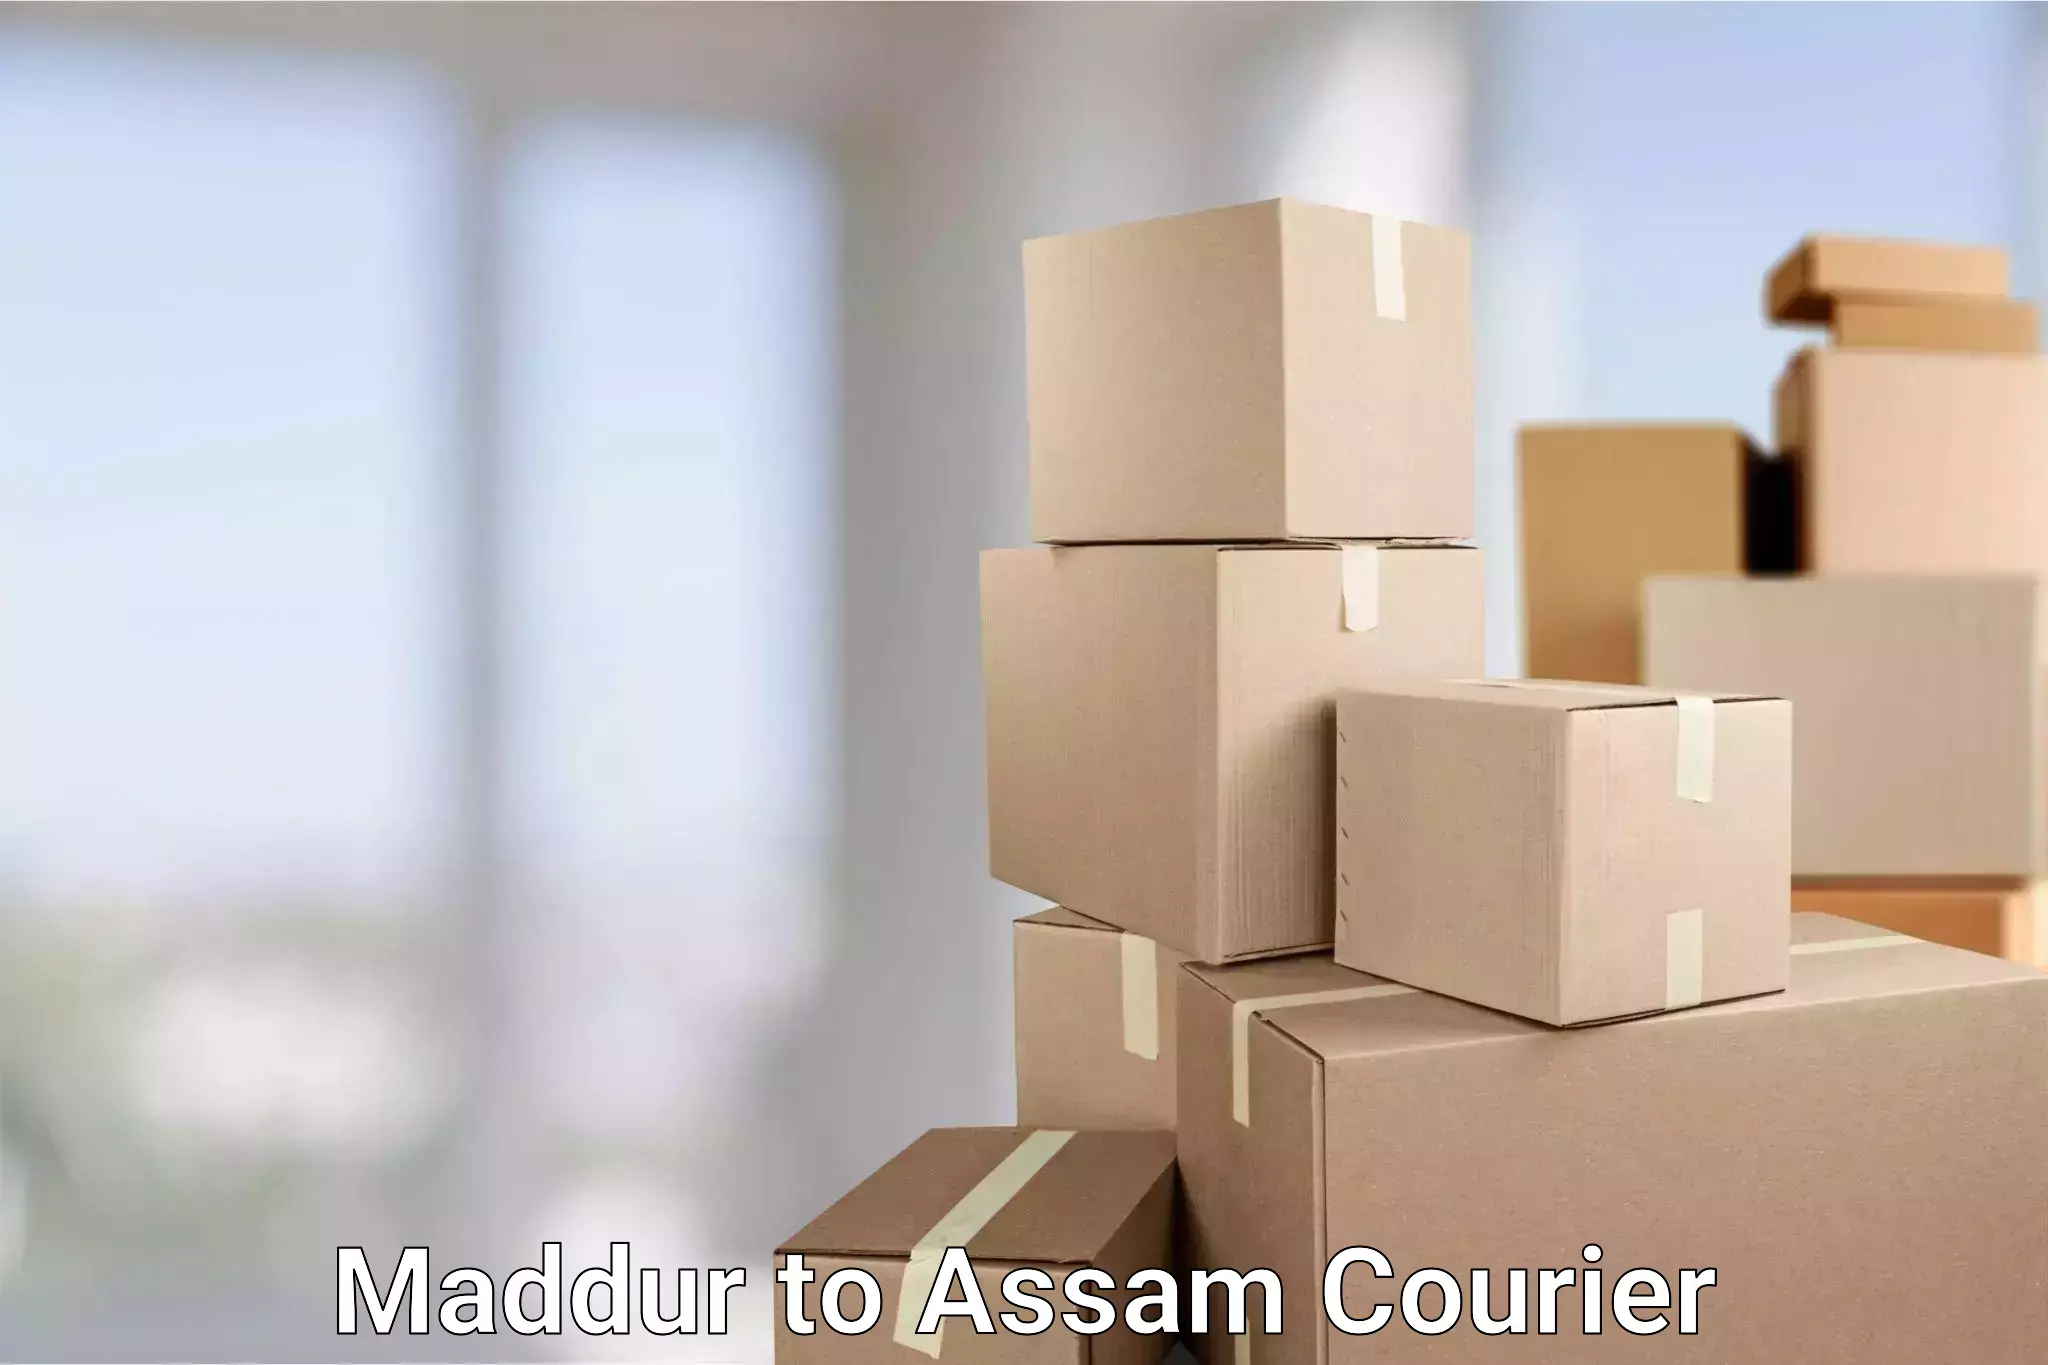 Global parcel delivery Maddur to Assam